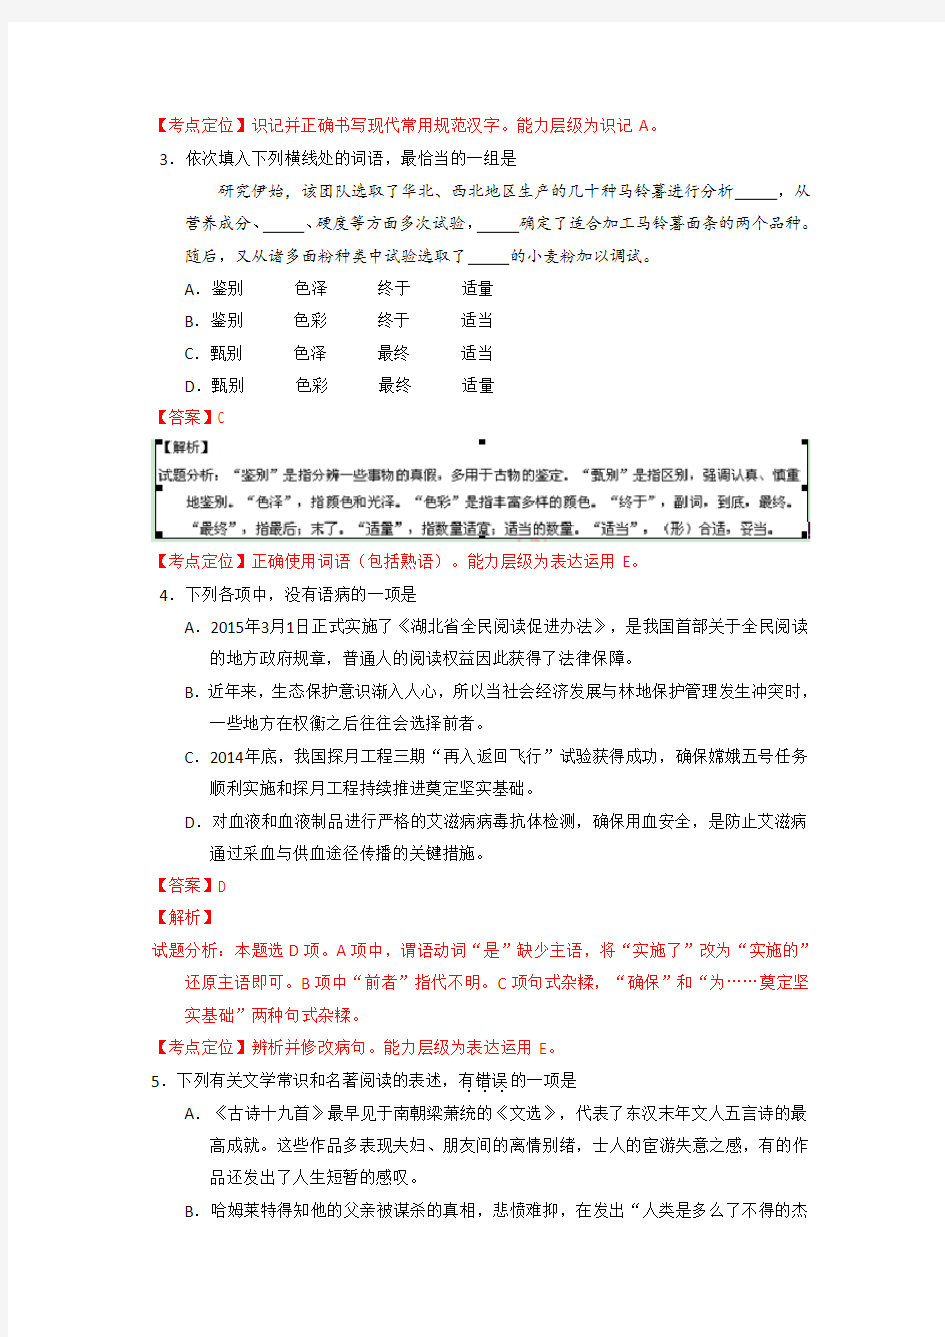 2015年高考真题——语文(湖北卷)解析版